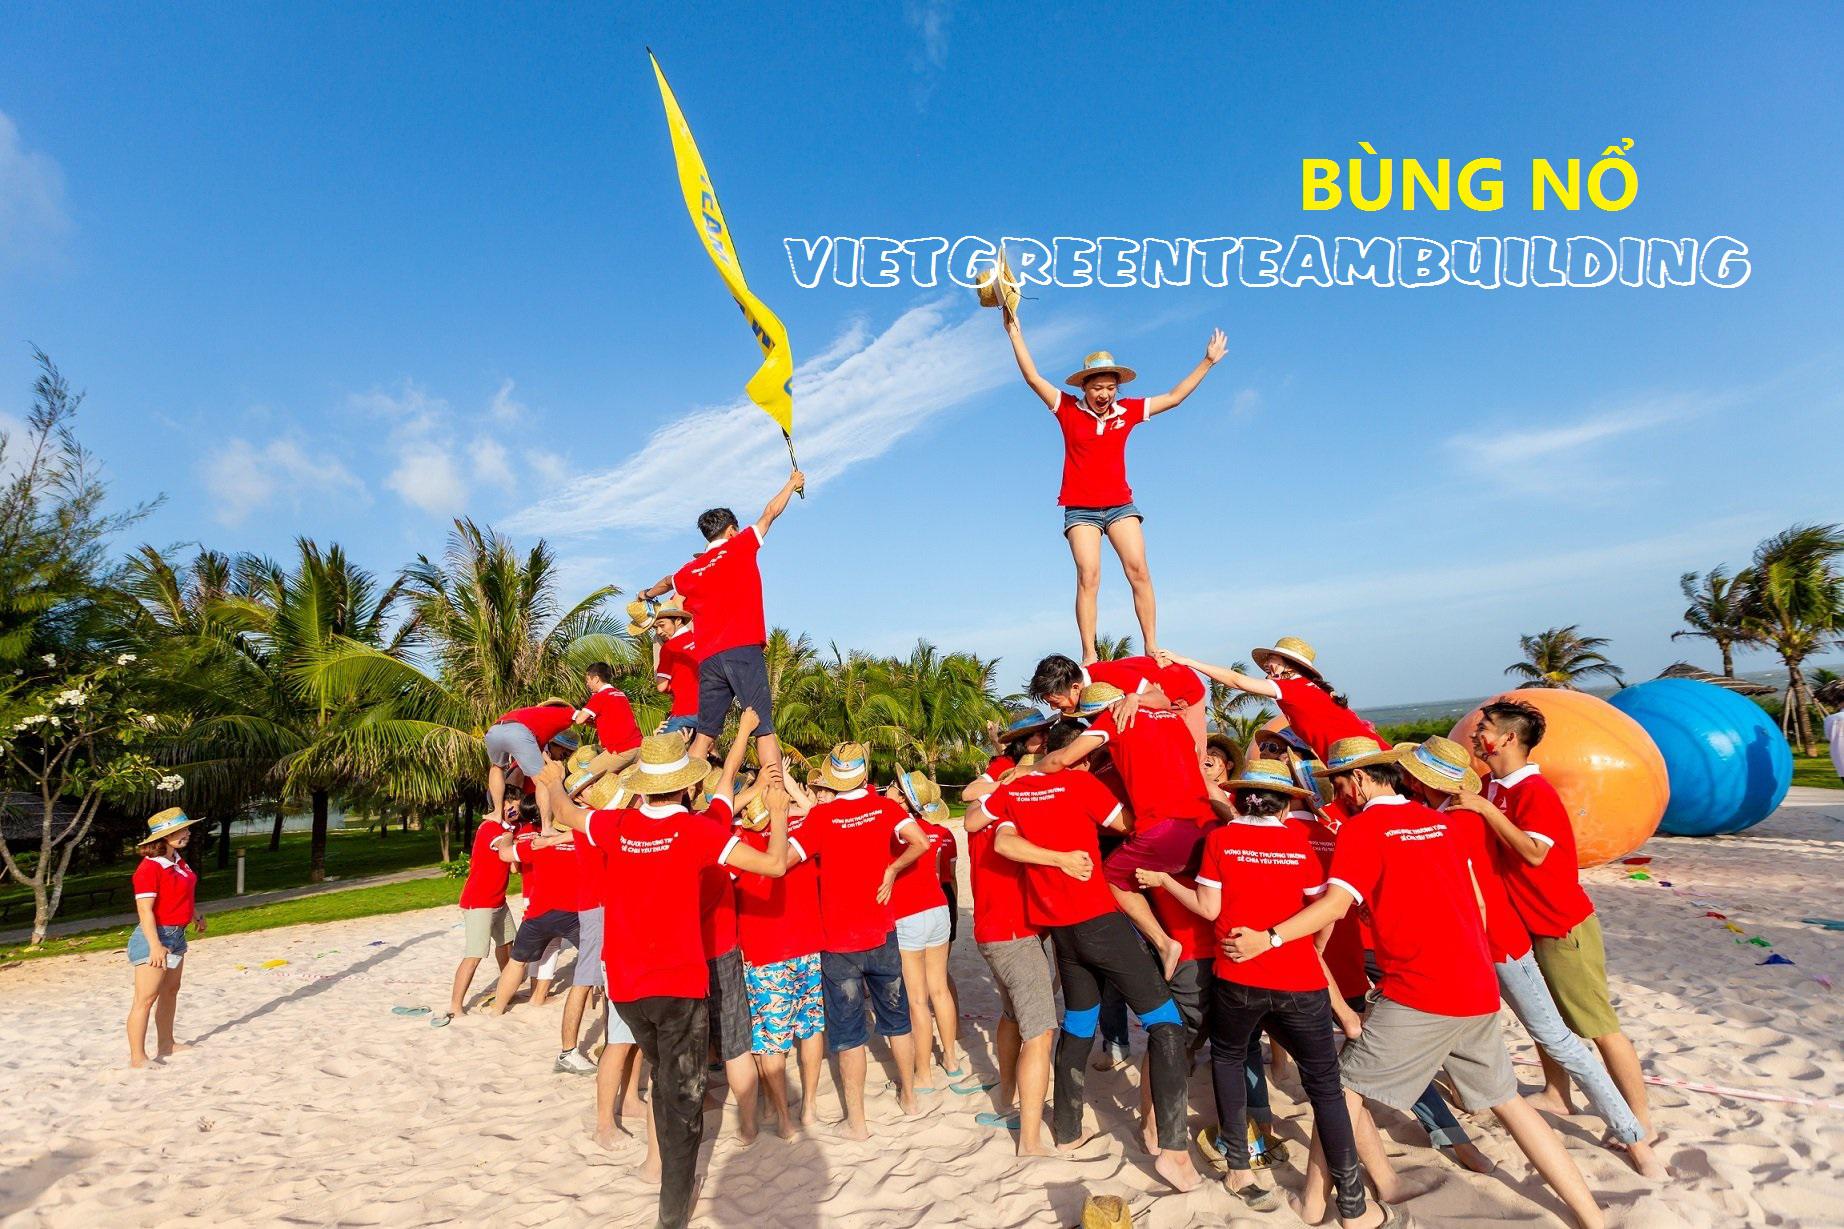 Tour Team Building: Du lịch Lagi - Biển Cam Bình 2 ngày 1 đêm